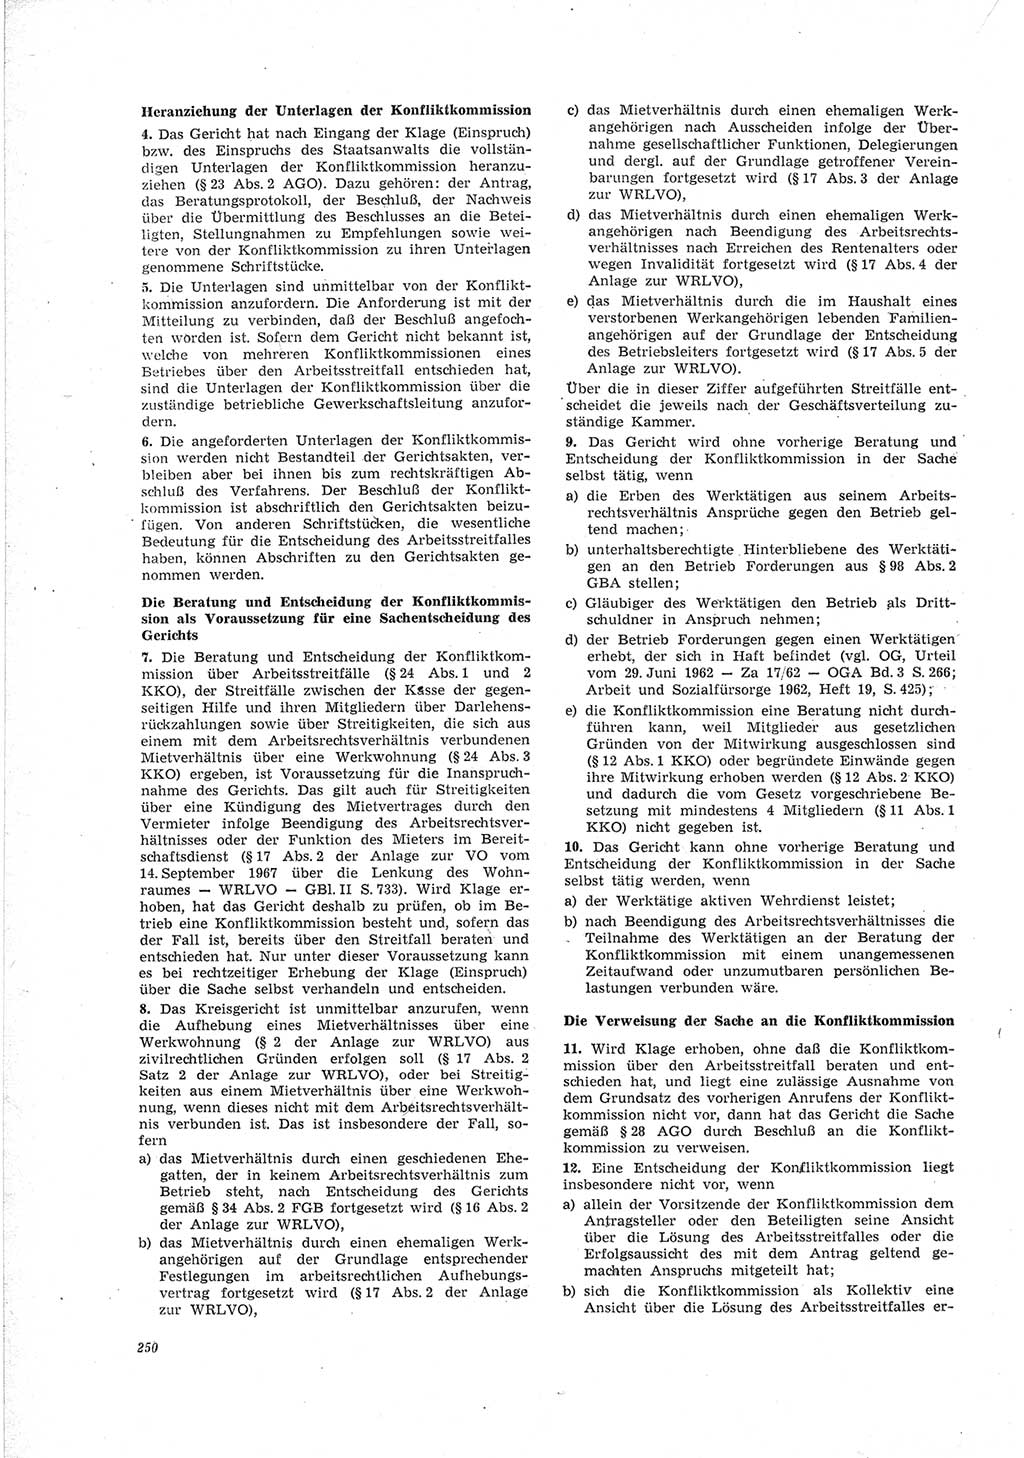 Neue Justiz (NJ), Zeitschrift für Recht und Rechtswissenschaft [Deutsche Demokratische Republik (DDR)], 23. Jahrgang 1969, Seite 250 (NJ DDR 1969, S. 250)